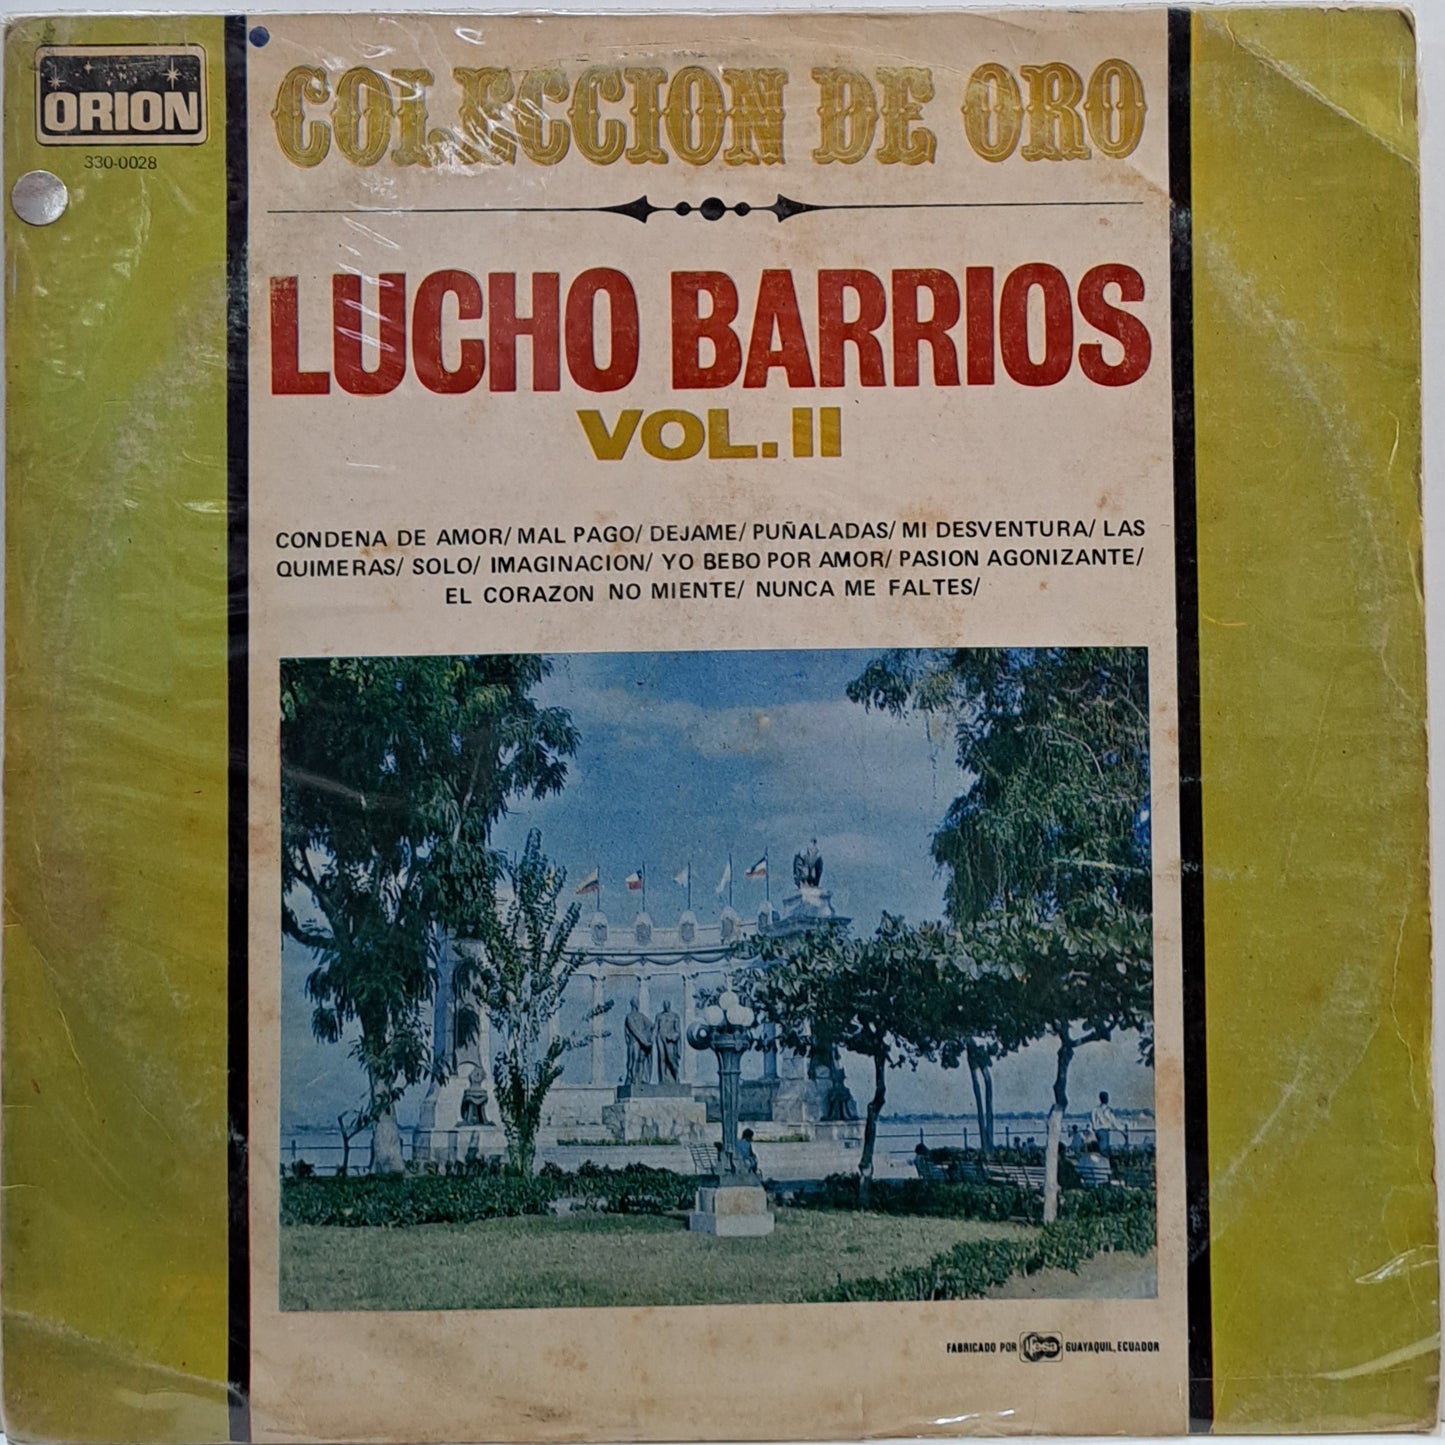 LUCHO BARRIOS - COLECCION DE ORO VOL II LP